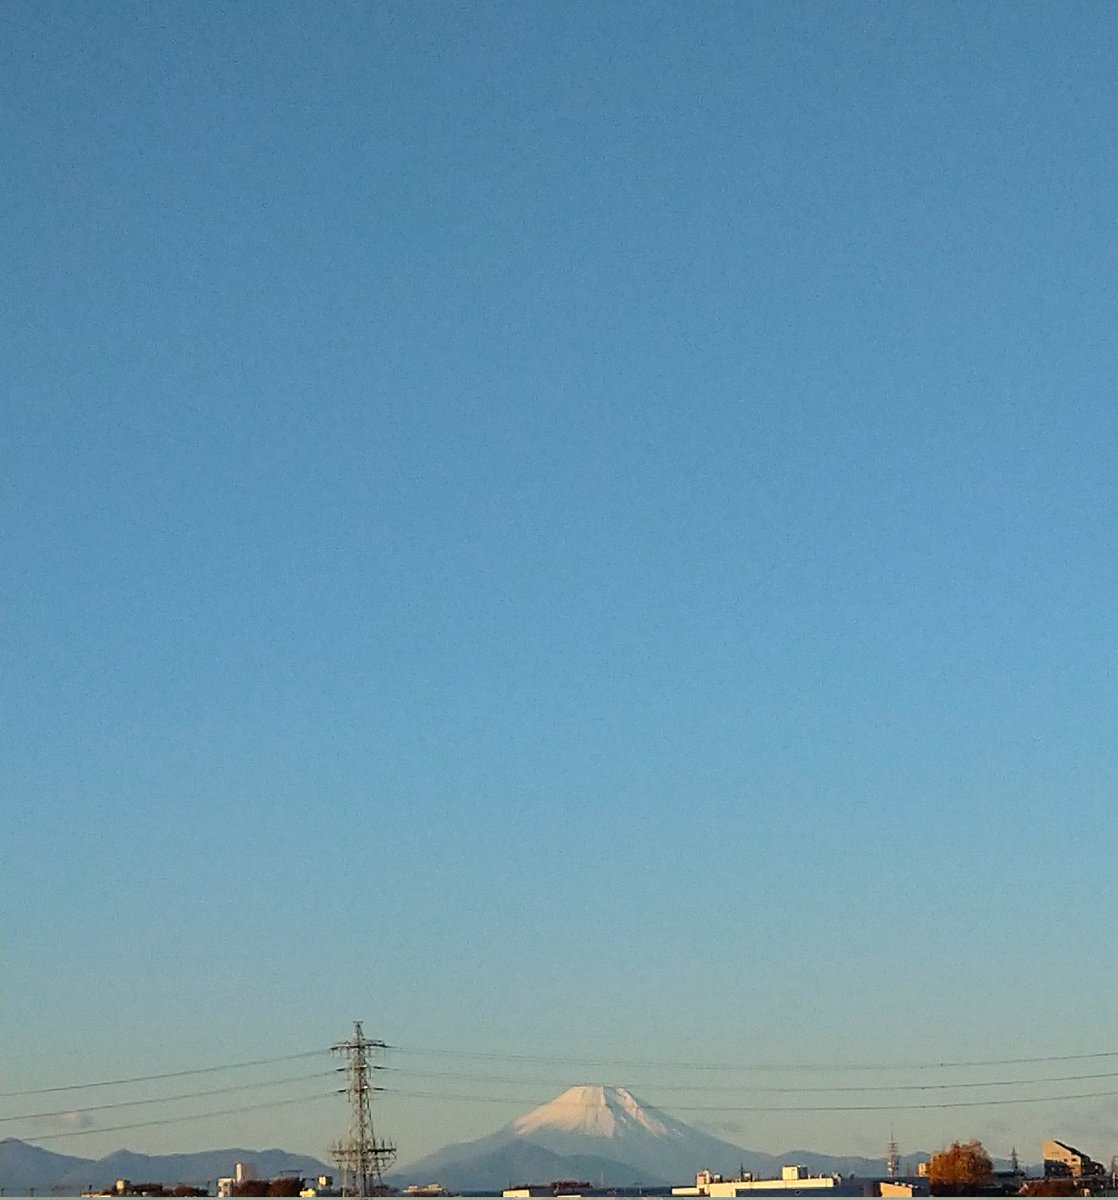 おはようございます🙂 今朝は余裕があったので見に行ってきました‼️ 黄味がかった優しい空に富士山が🗻😆🎶 朝陽に照らされた雪化粧も綺麗でした～☀️🗻✨